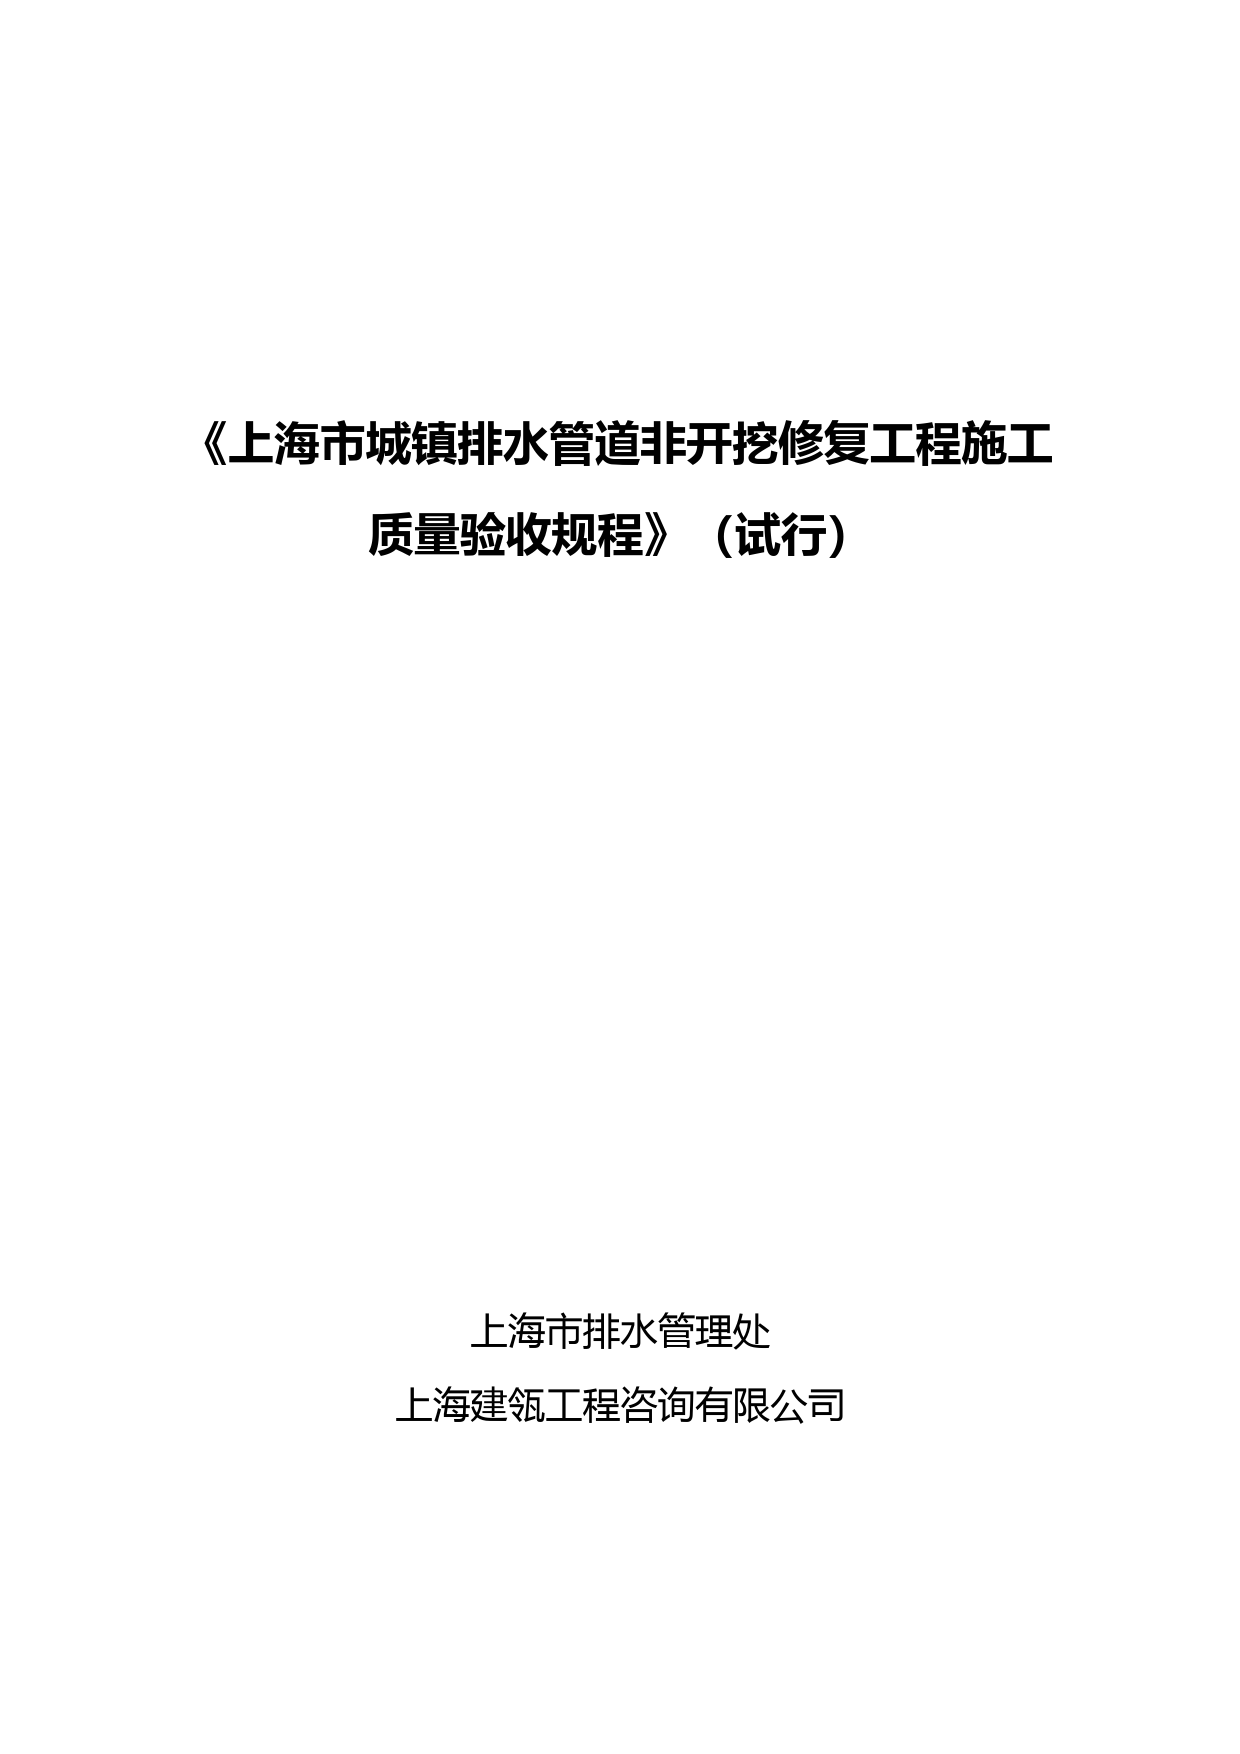 《上海市城镇排水管道非开挖修复工程施工质量验收规程》(试行)5.20